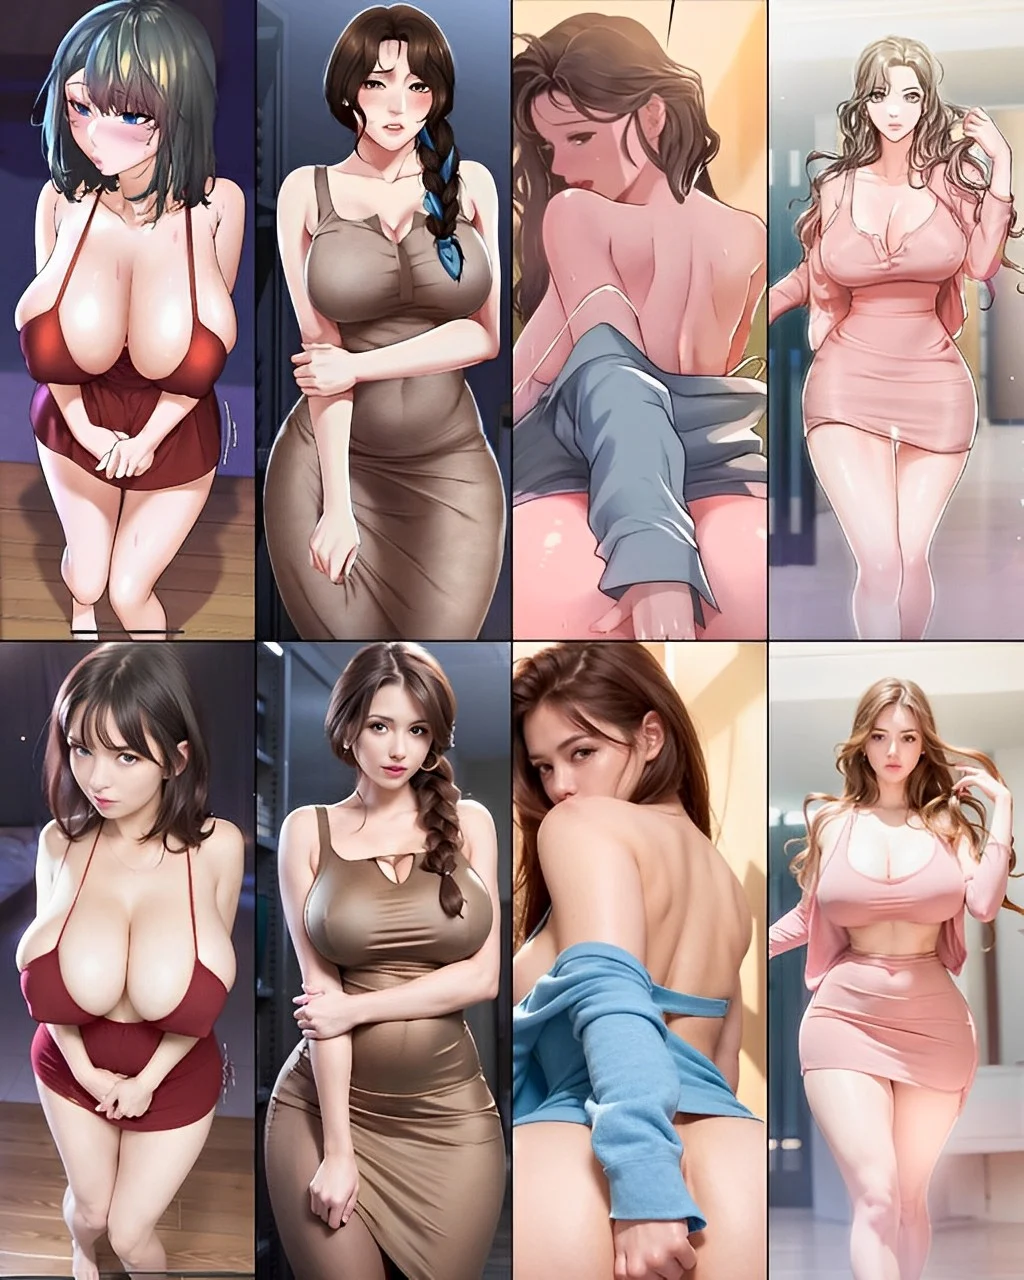 IA cria “versão real” de personagens femininas de populares hentais